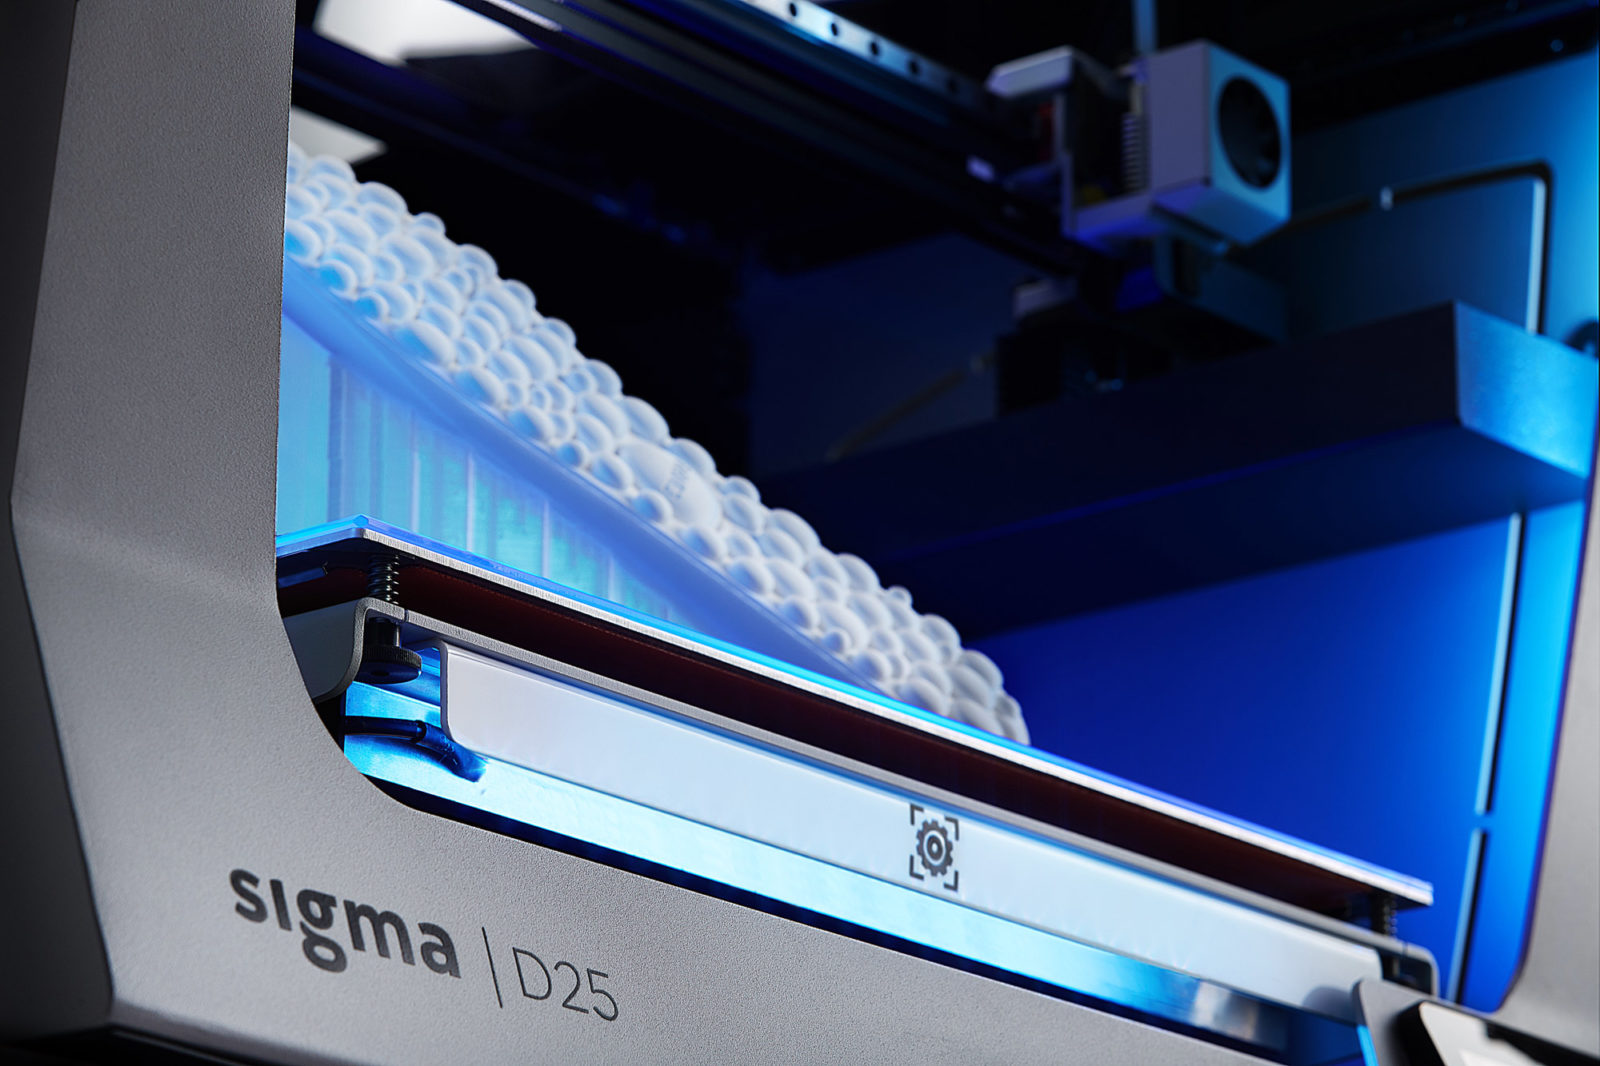 Meet the and BCN3D Sigma 3D printing series